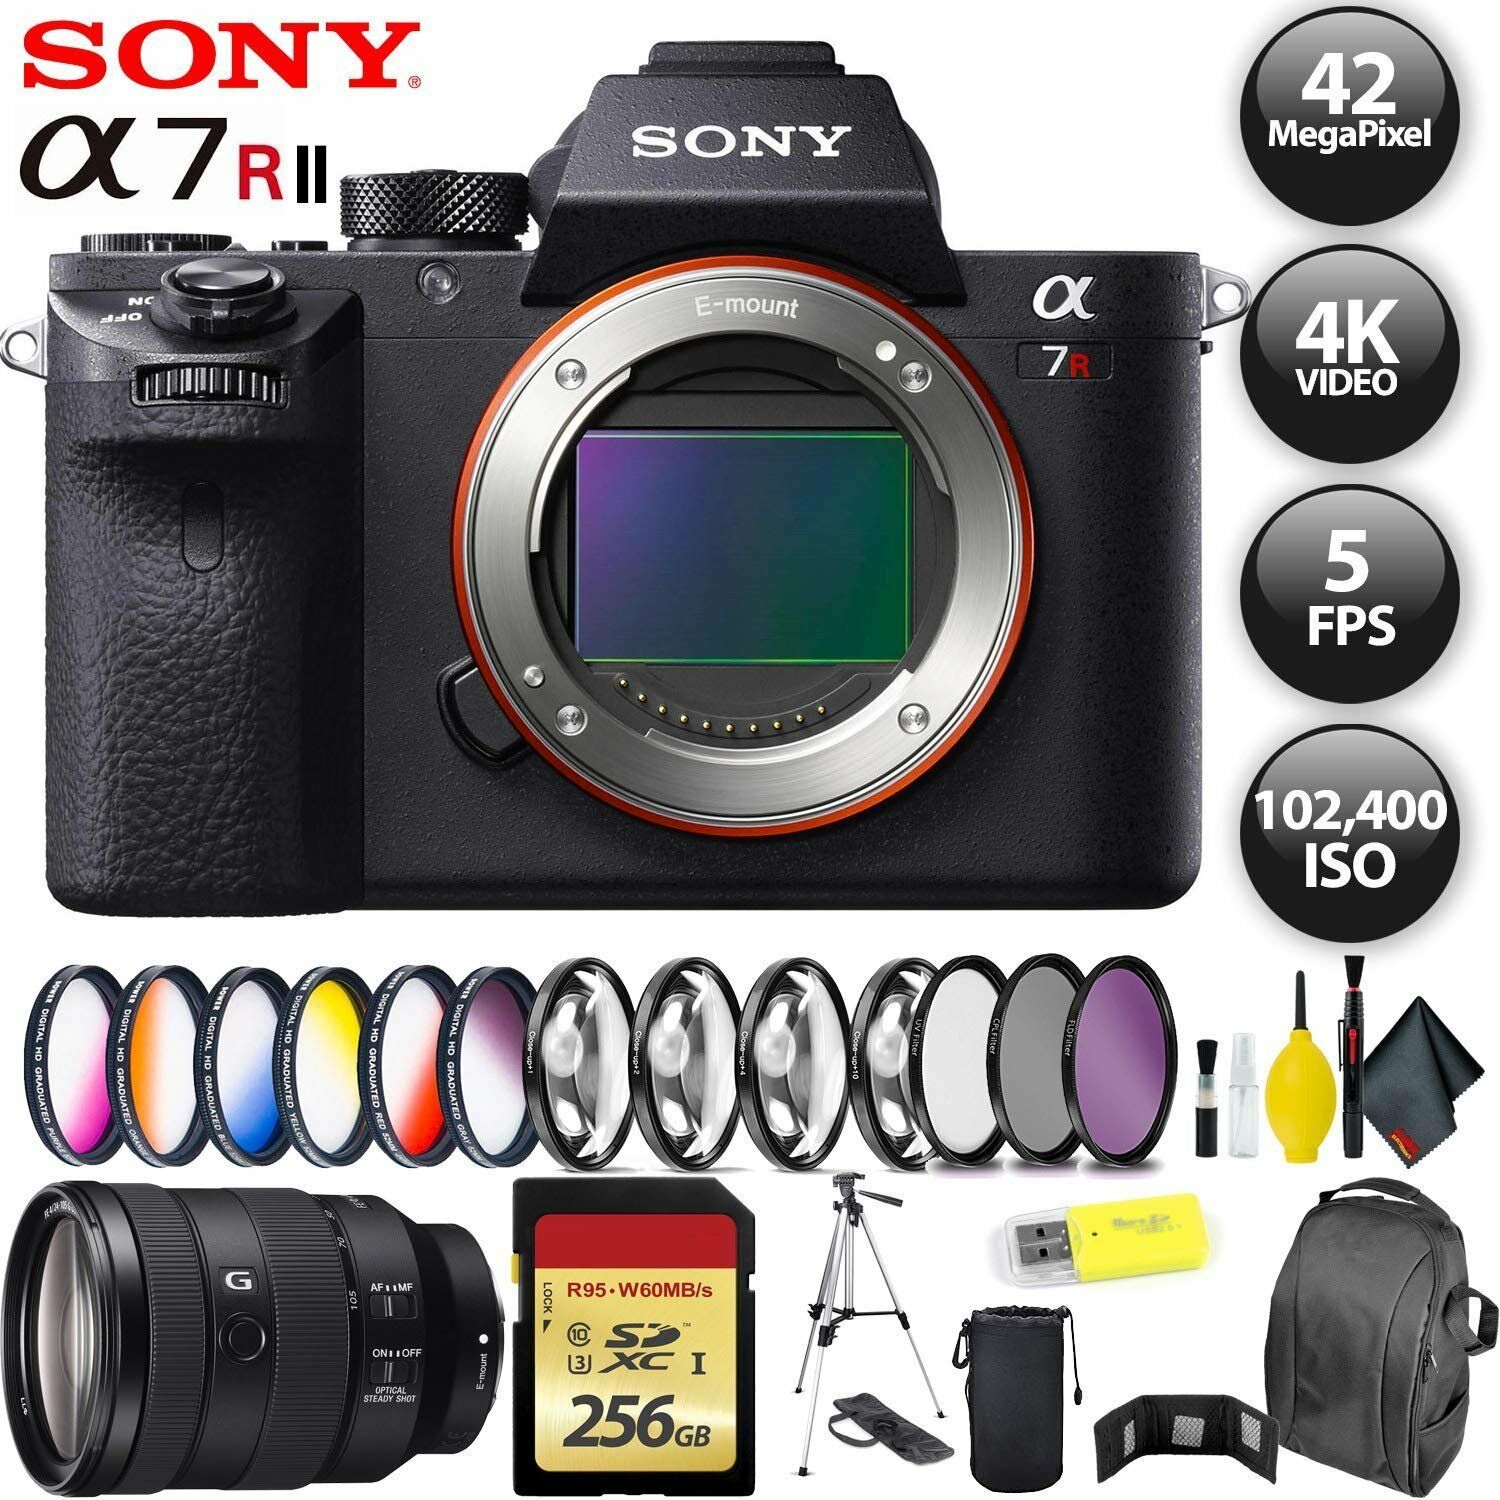 Sony Alpha a7R II Mirrorless Digital Camera International Model + 256GB Memory Card + Sony FE 24-105mm Lens